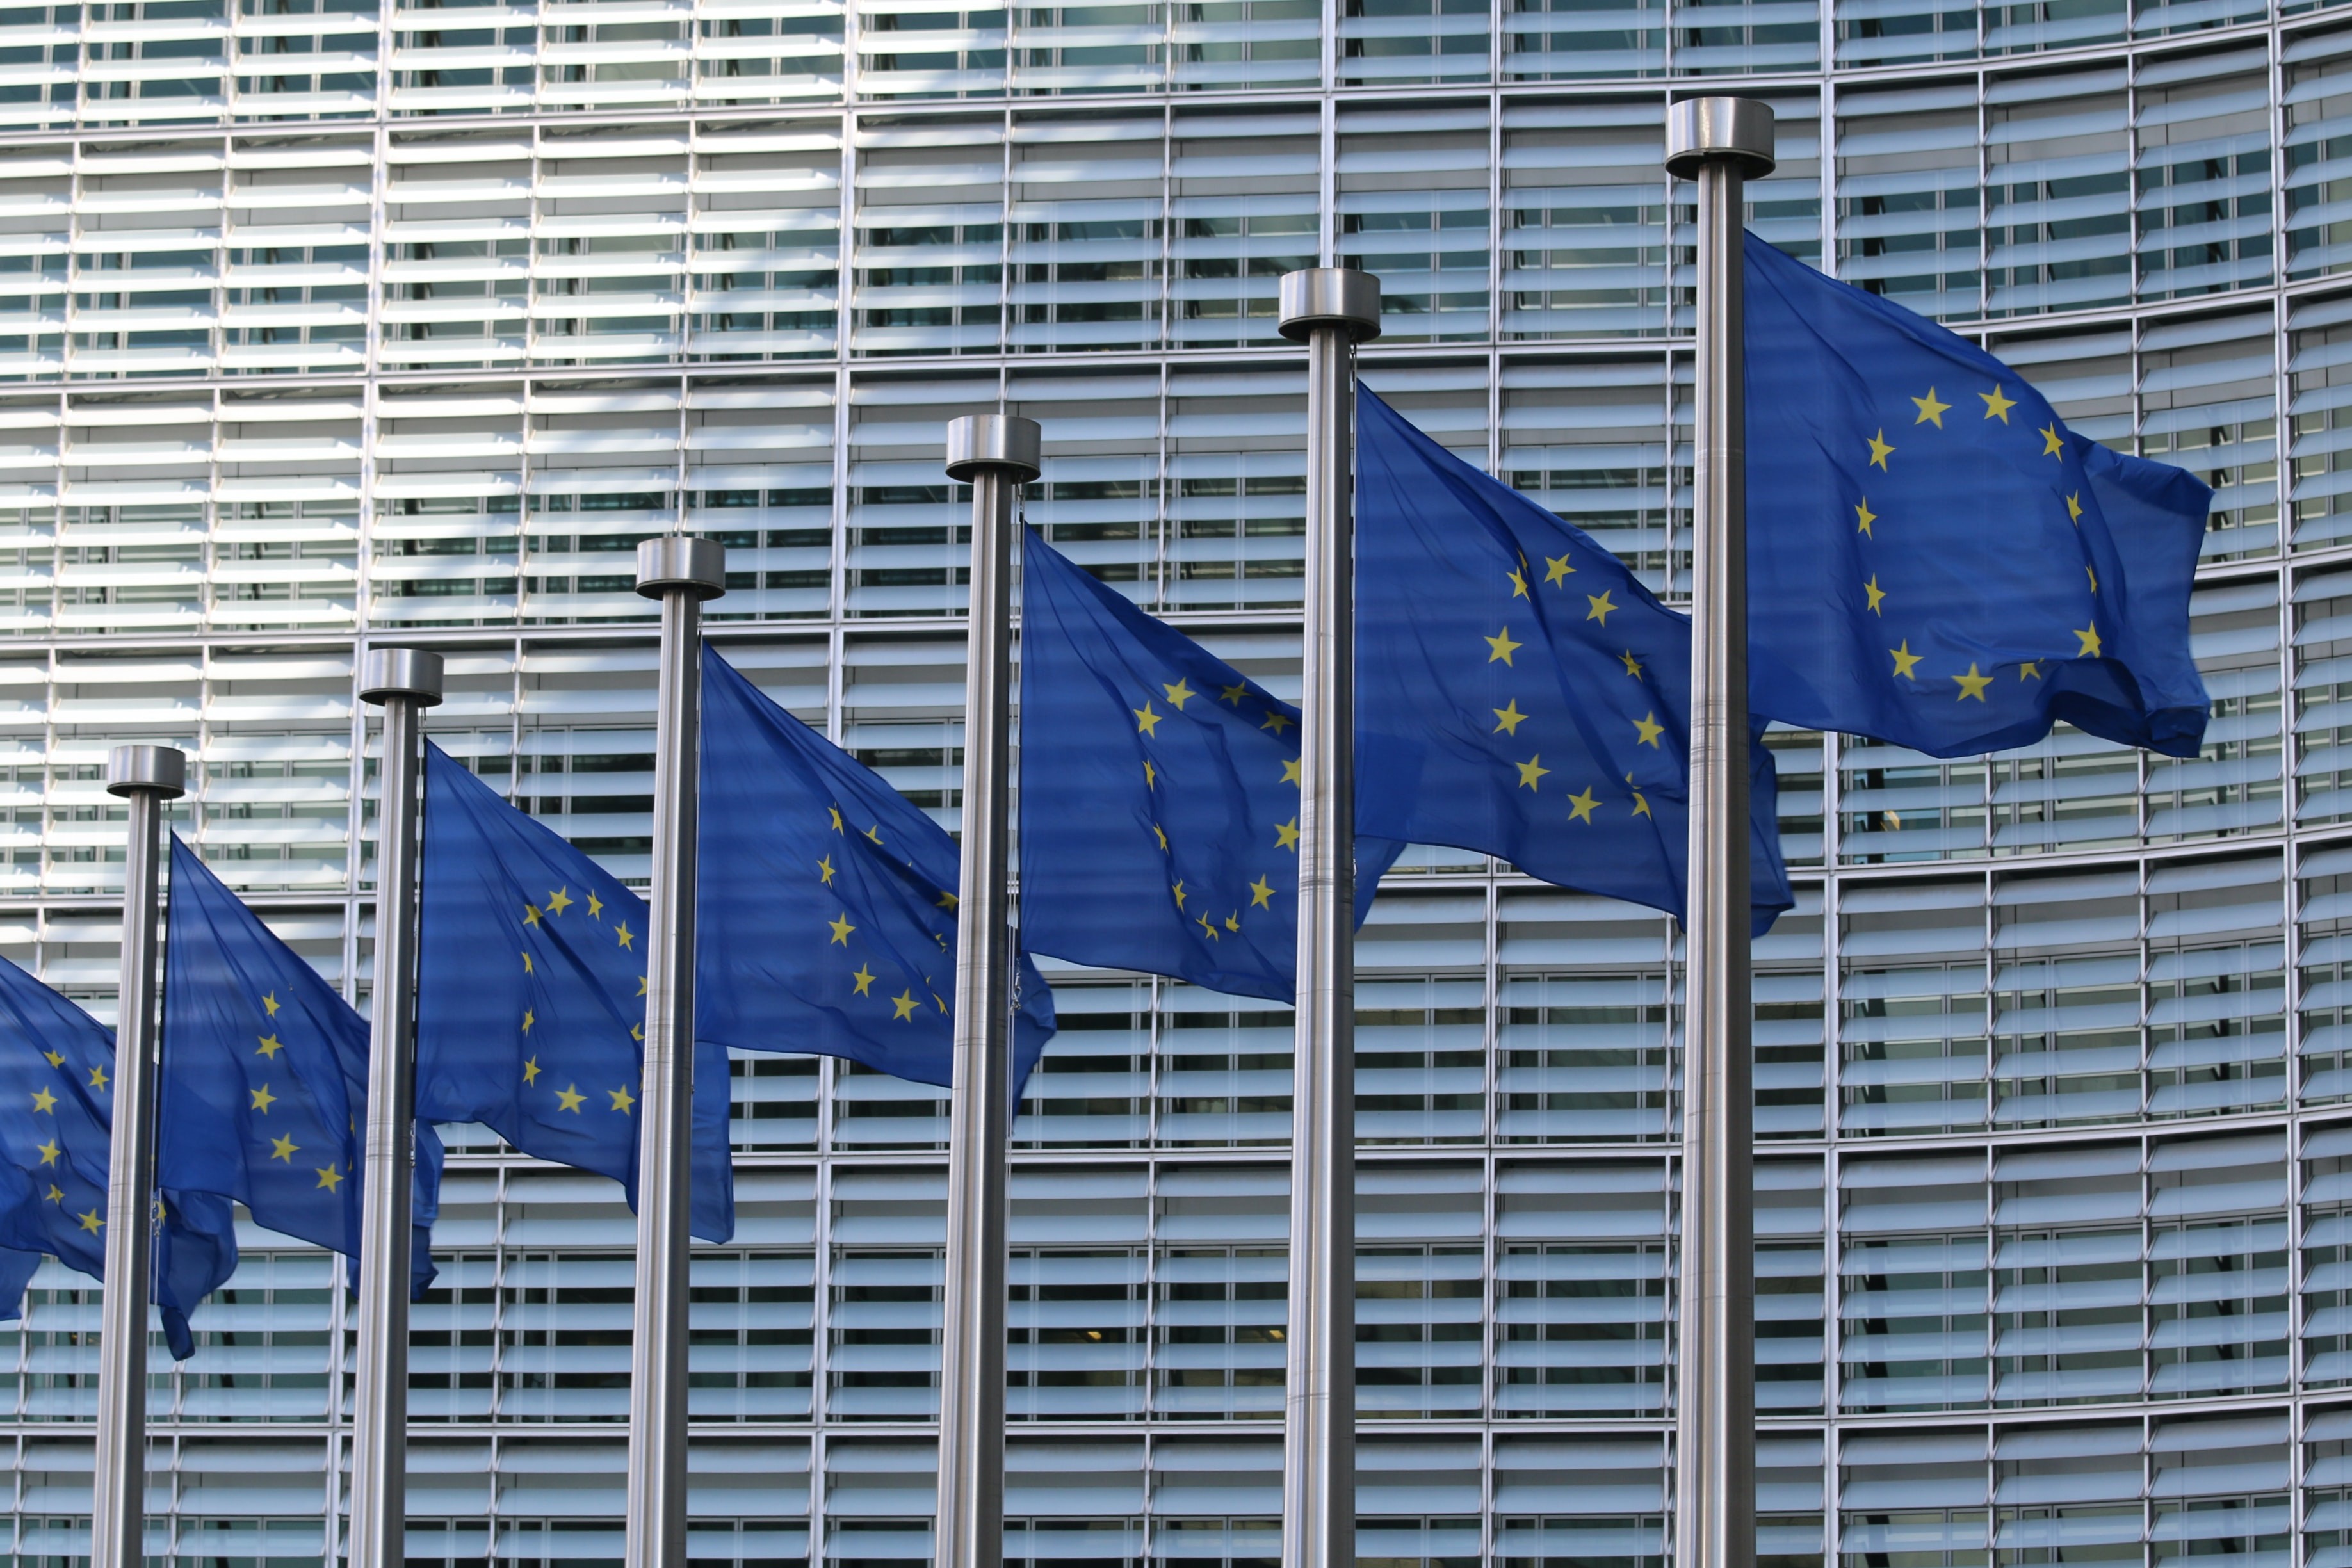 EU flags at the European Commission Berlaymont building. (Photo by Guillaume Périgois via Unsplash)